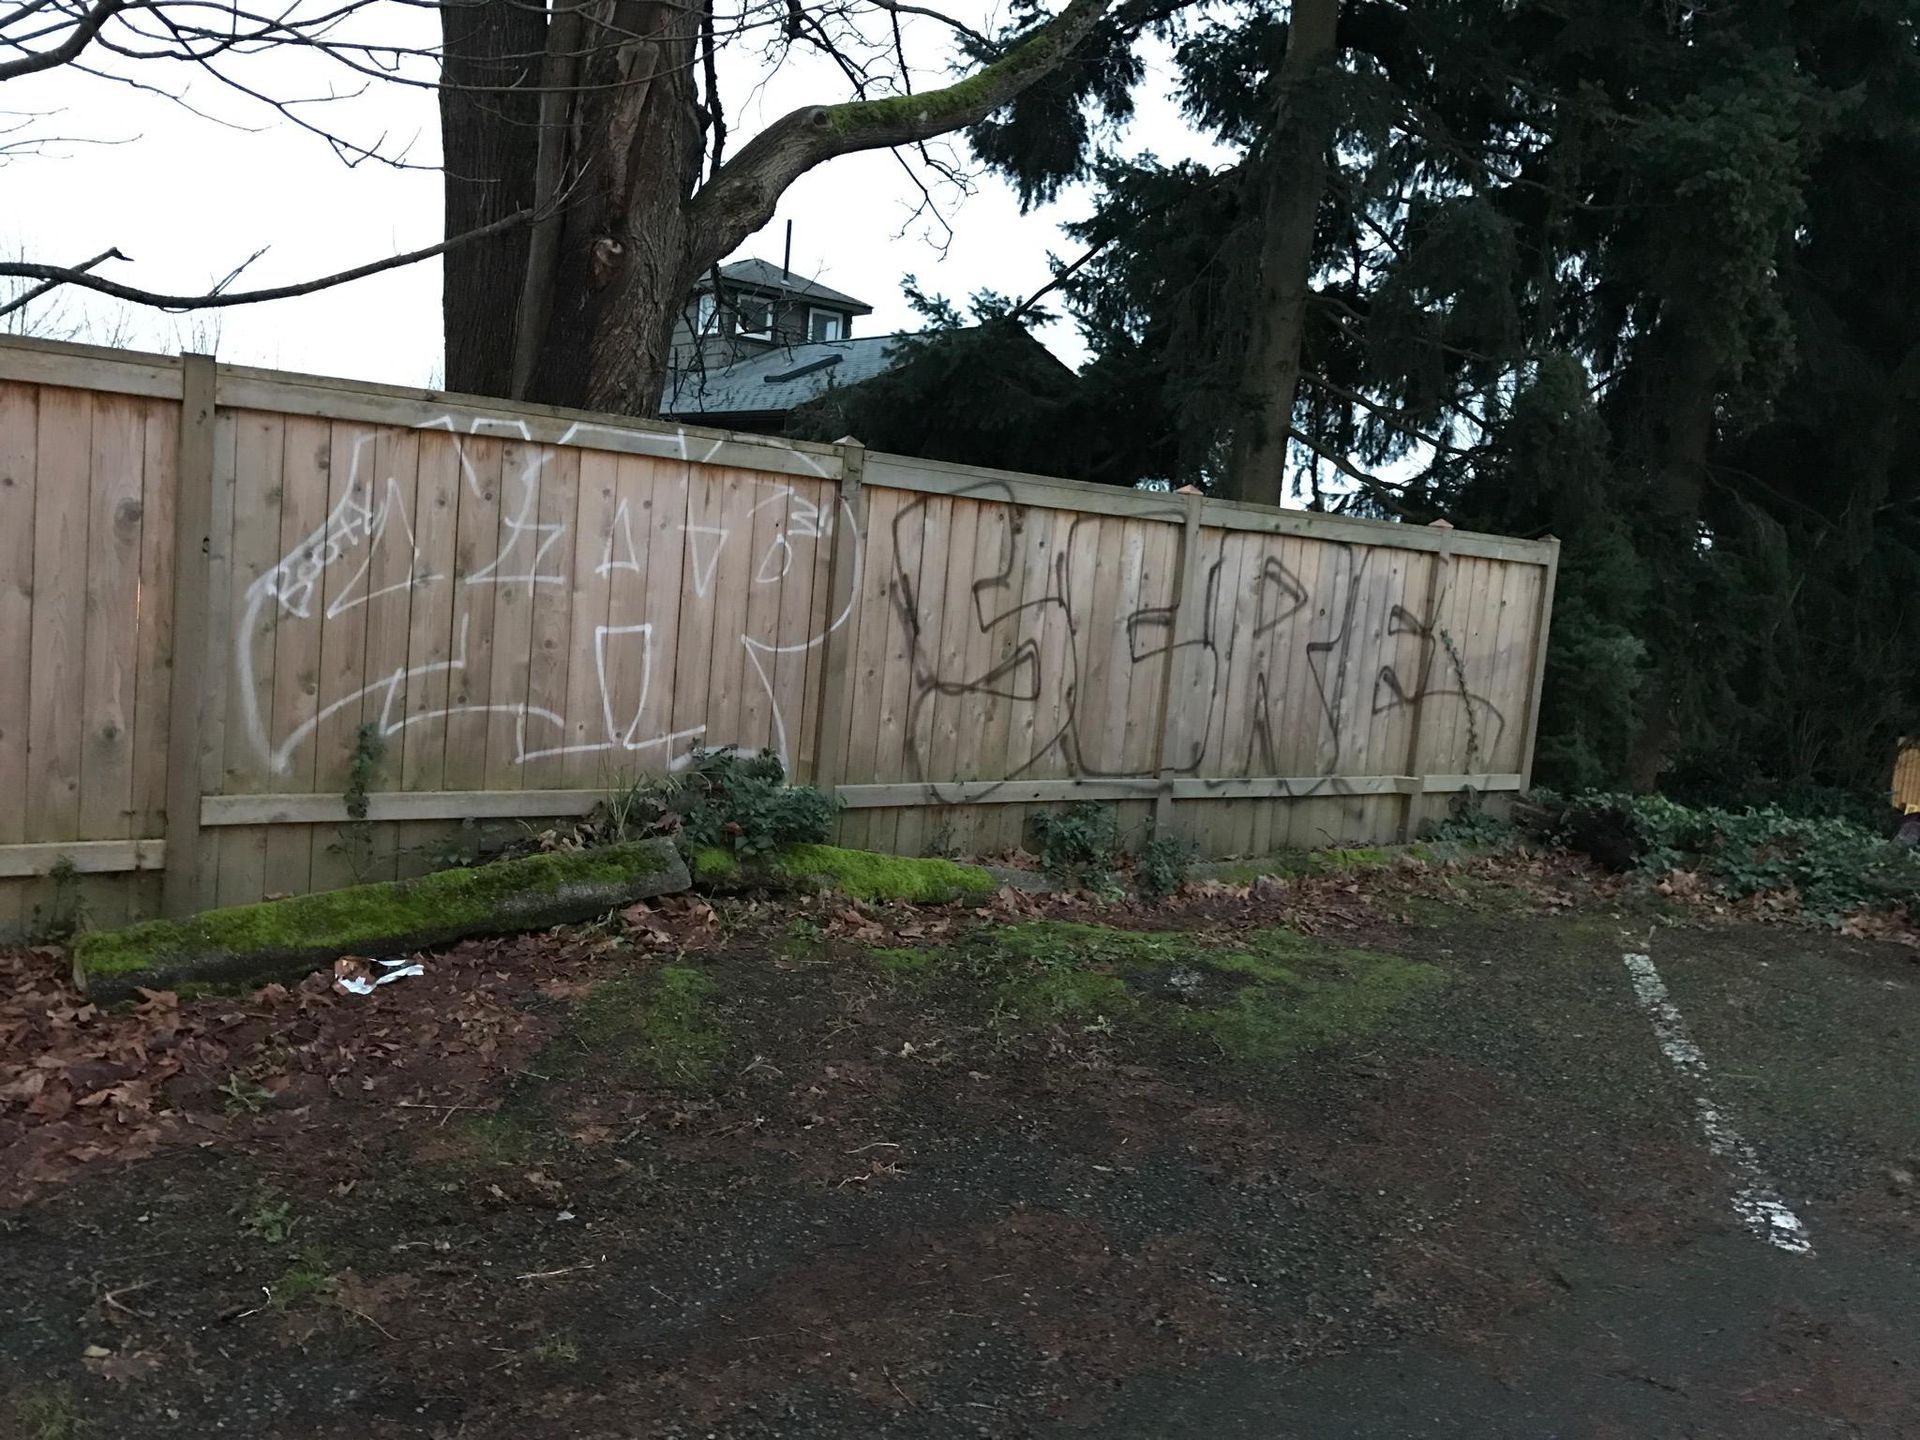 Wood Fence Before Graffiti Removal - Seattle, WA - ASAP Graffiti Removal